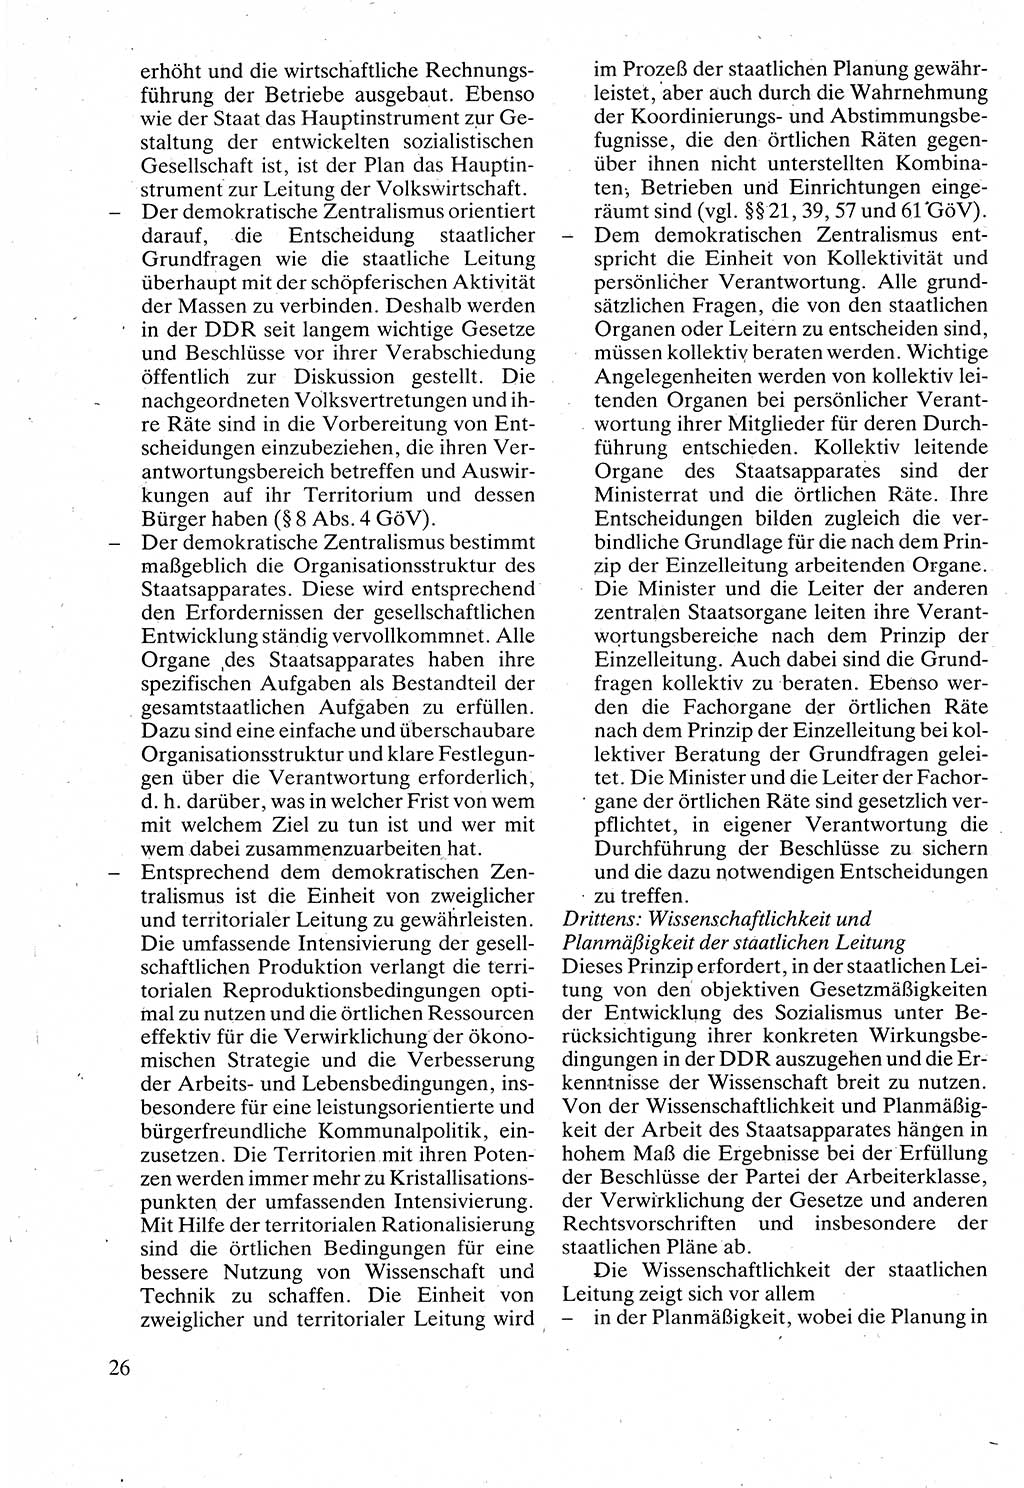 Verwaltungsrecht [Deutsche Demokratische Republik (DDR)], Lehrbuch 1988, Seite 26 (Verw.-R. DDR Lb. 1988, S. 26)